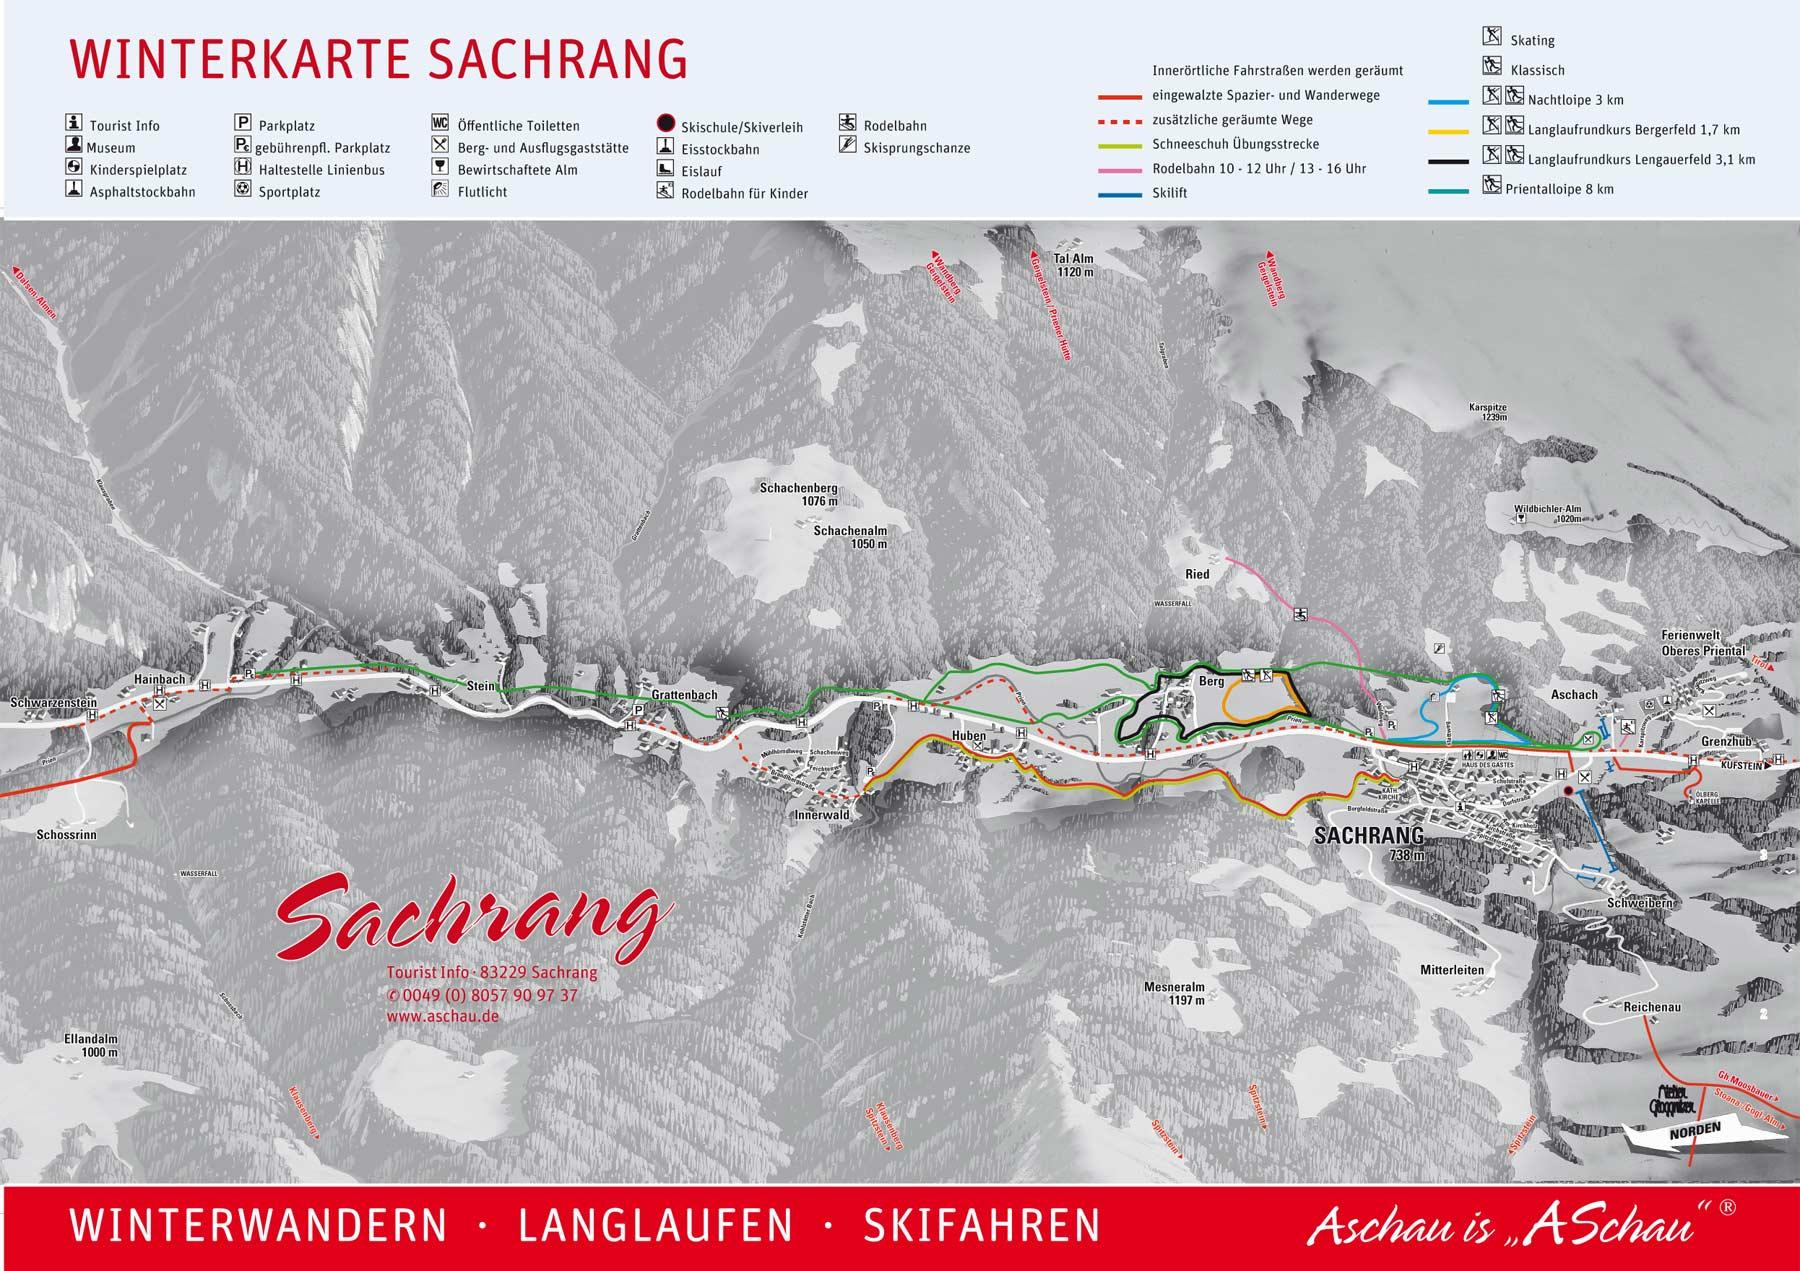 Winterkarte Sachrang